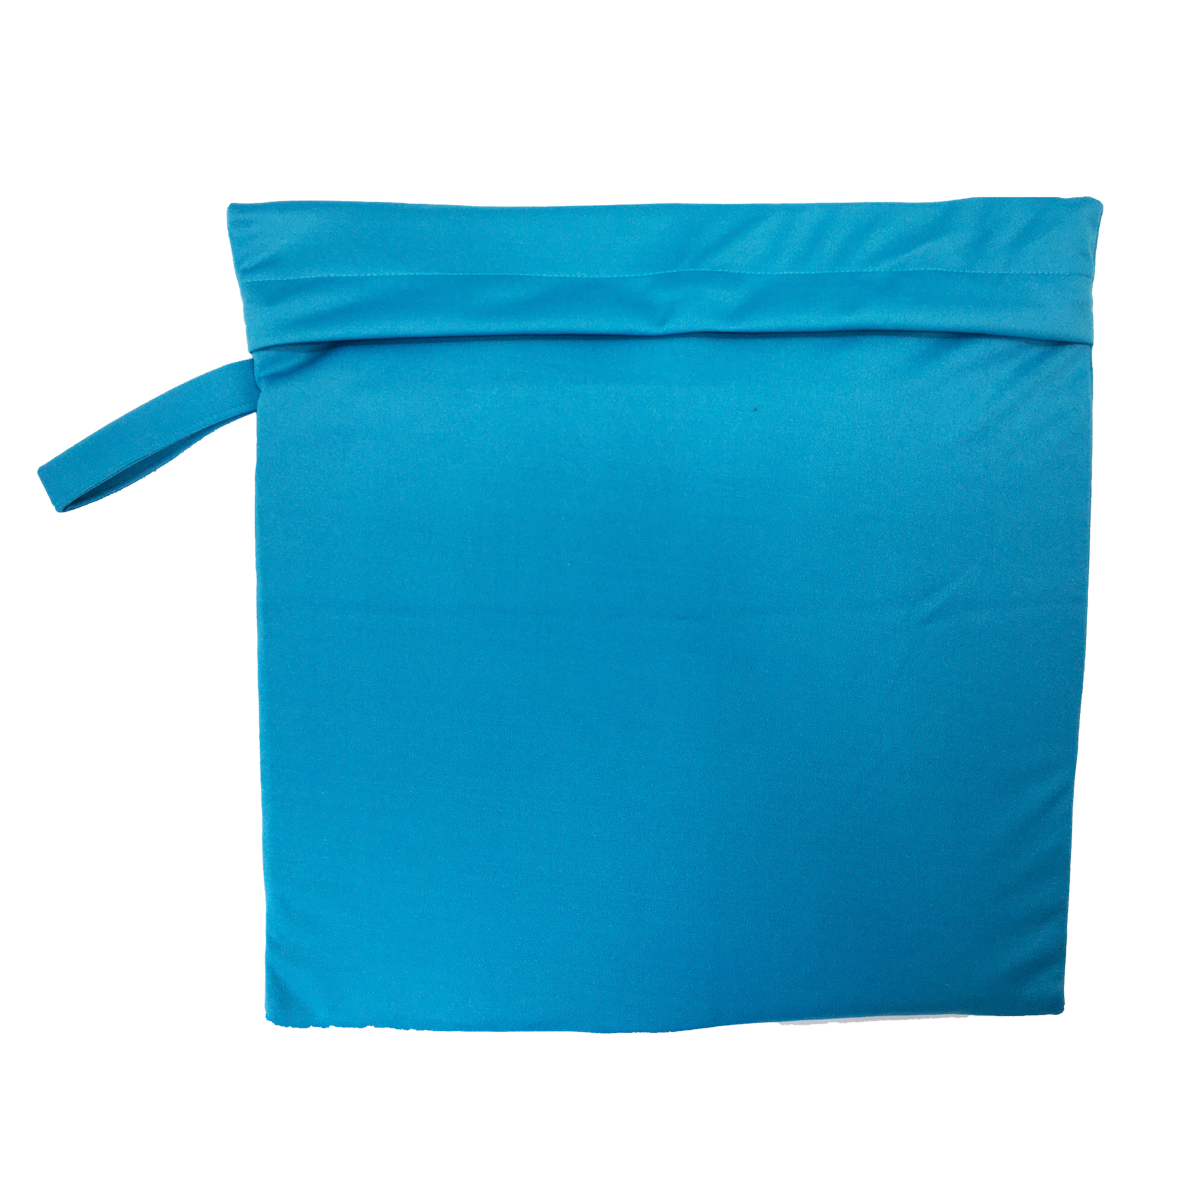 Bolsa impermeable de algodón revestido azul y turquesa para la